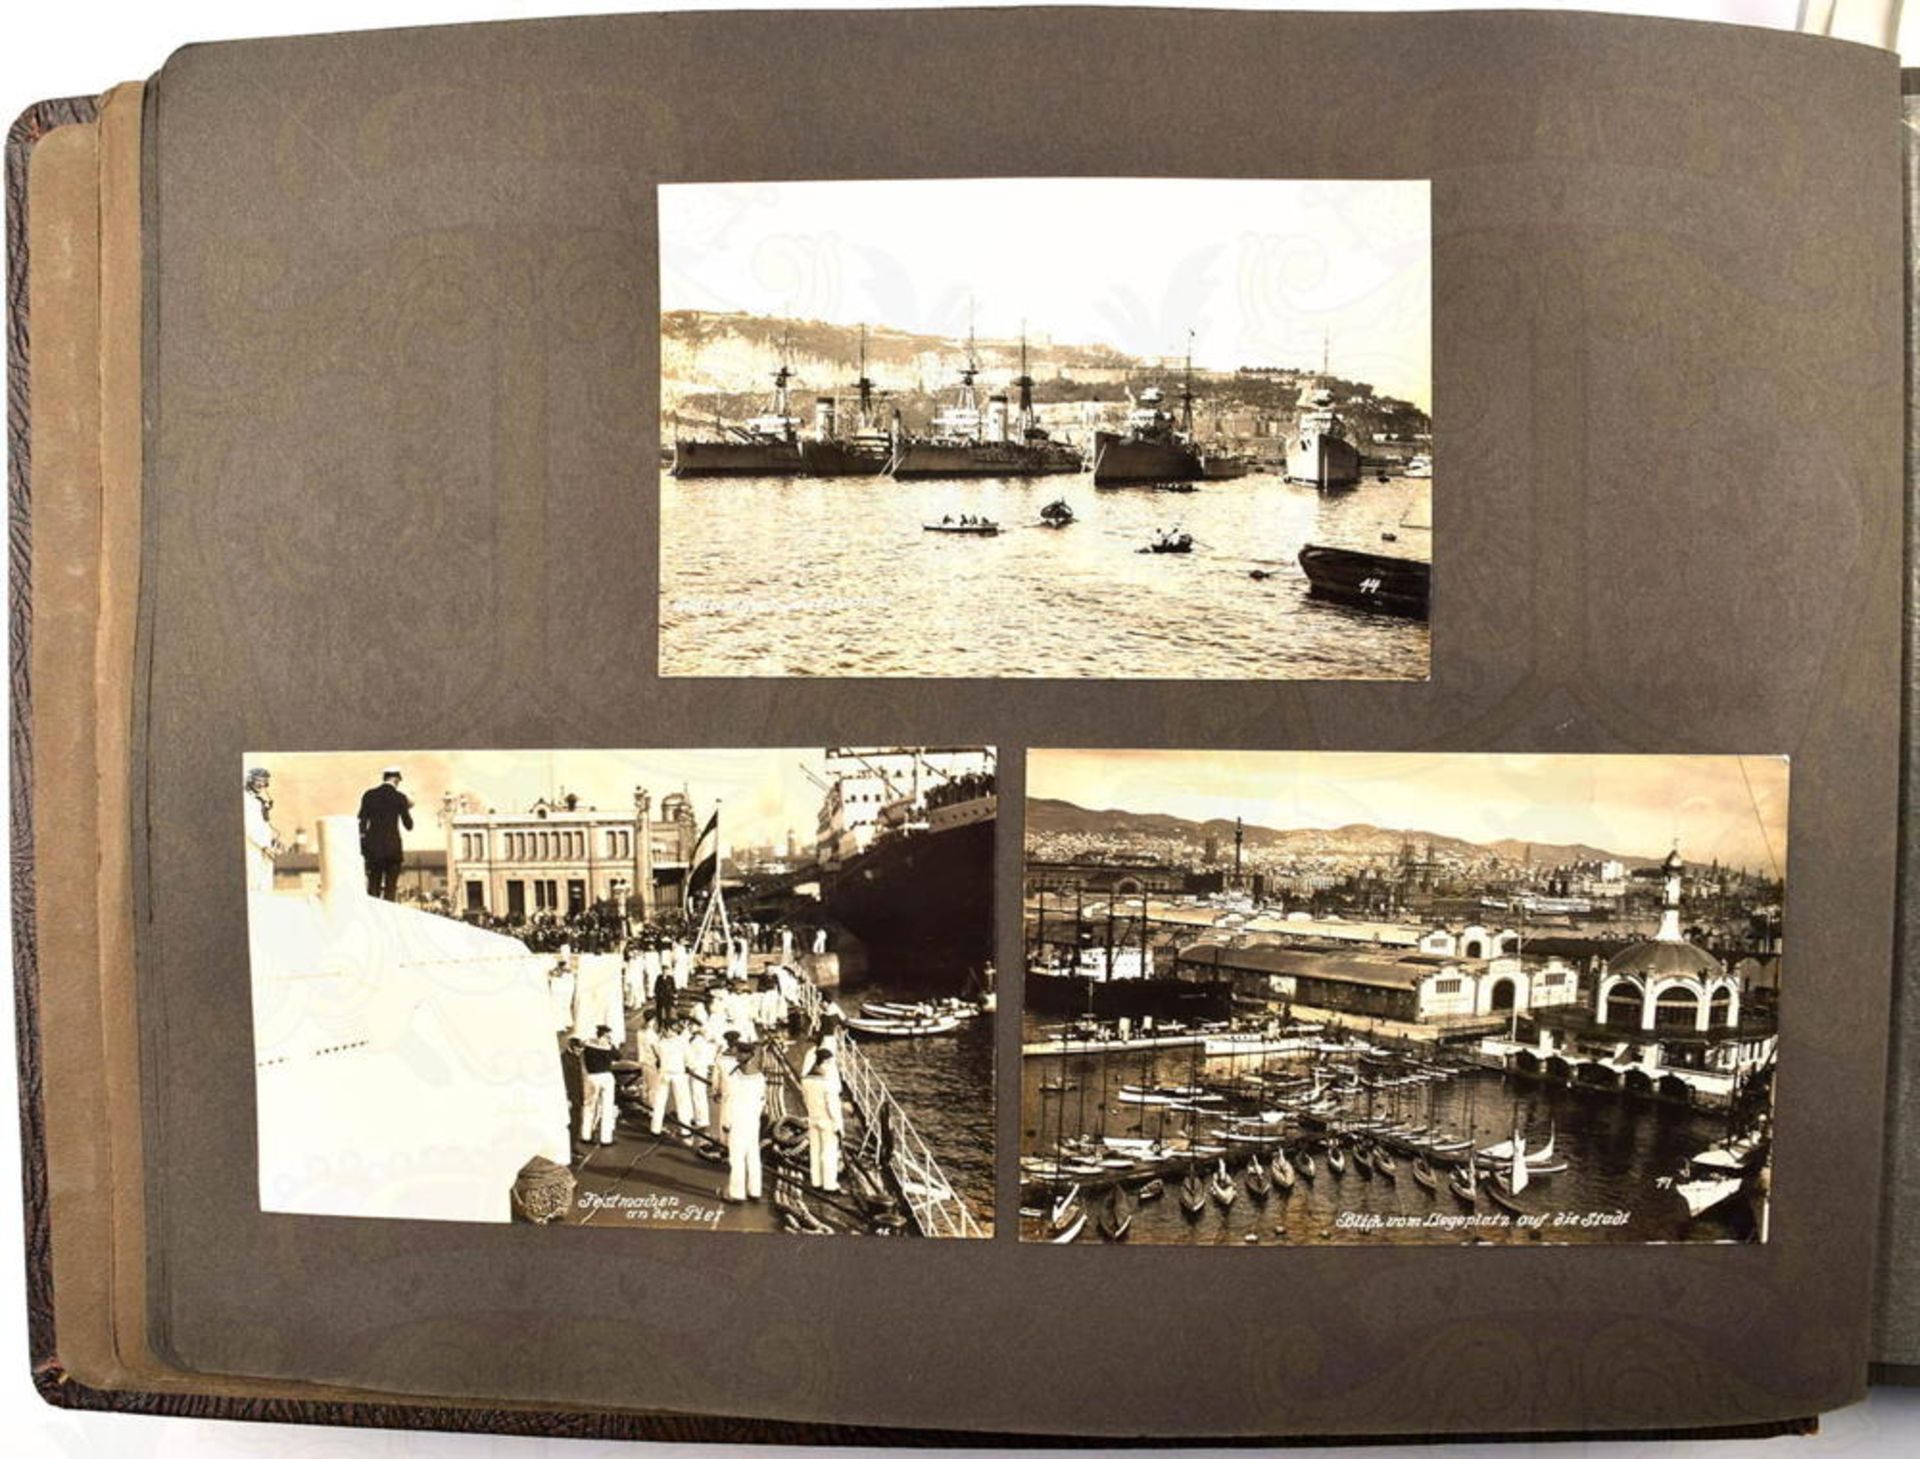 FOTOALBUM LEICHTER KREUZER KÖNIGSBERG, bei der Weltausstellung Barcelona 1929, mit 120 Fotos u.